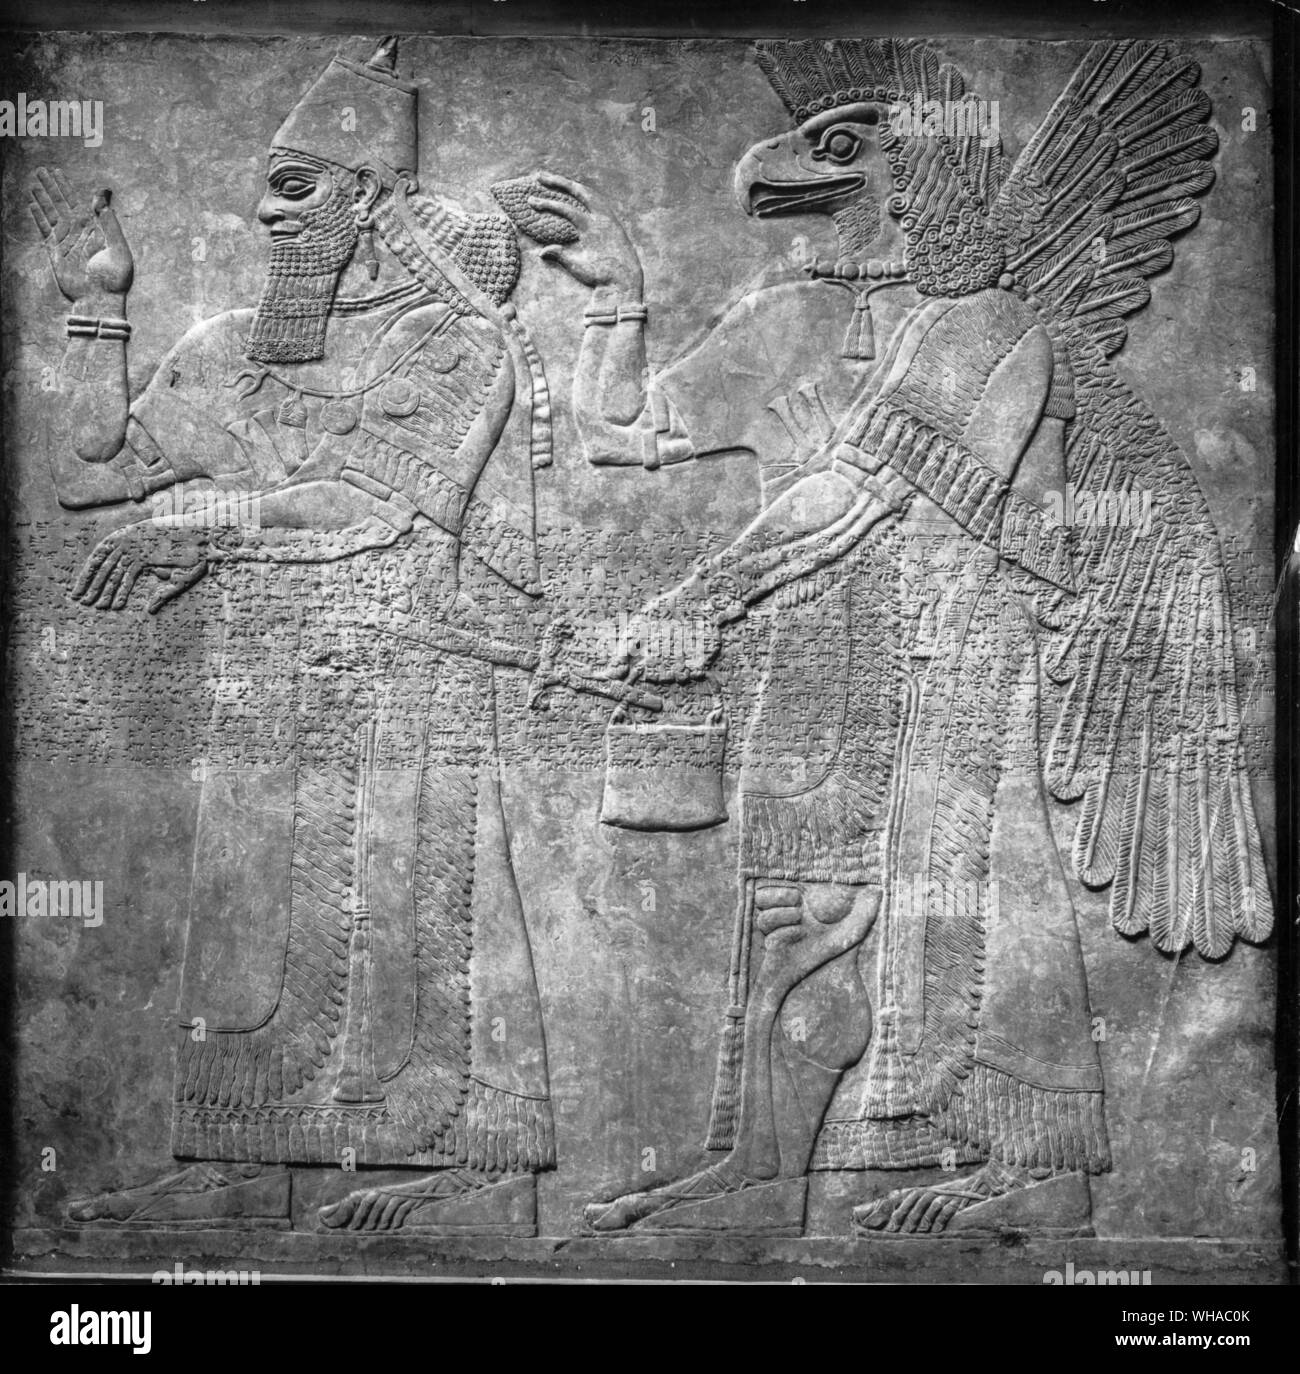 Assurbanipal mit Winged eagle vorangegangen Gott vor der heilige Baum, Entlastung von Nimrud. Assurbanipal war König von Assyrien von 668-626 v. Chr.. Ein Krieger, Gelehrte und großer Förderer der Künste, versammelte er eine systematisch organisierte Bibliothek in seinem Palast in Ninive. Über 20.000 Tabletten aus dieser Bibliothek sind jetzt im British Museum in London, einschließlich das Gilgamesch-epos. Andere Tabletten enthalten Informationen über Events, Menschen, Pflanzen, Tiere und natürliche Phänomene. Reliefs im Museum zeigen Assurbanipal Jagd Lions aus einen Wagen und speisen in einem Garten mit seiner Königin Ashur-sharrat. Die Stockfoto